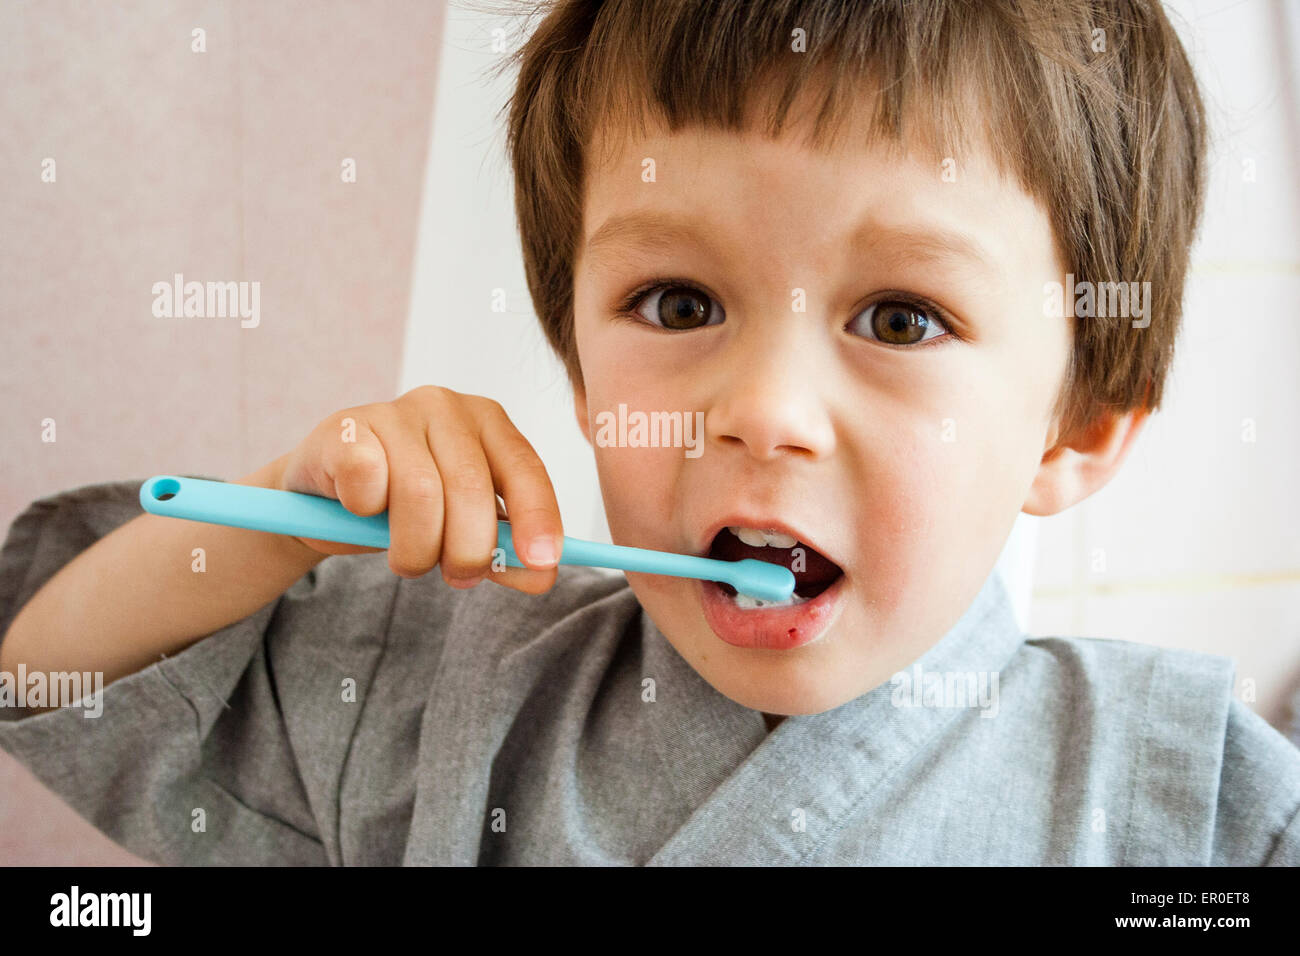 Gros plan sur un jeune enfant, un garçon, se brosser les dents avec une brosse à dents pour enfant tout en regardant le spectateur. Intérieur. Vue de la tête et des épaules. Lumière naturelle. Banque D'Images